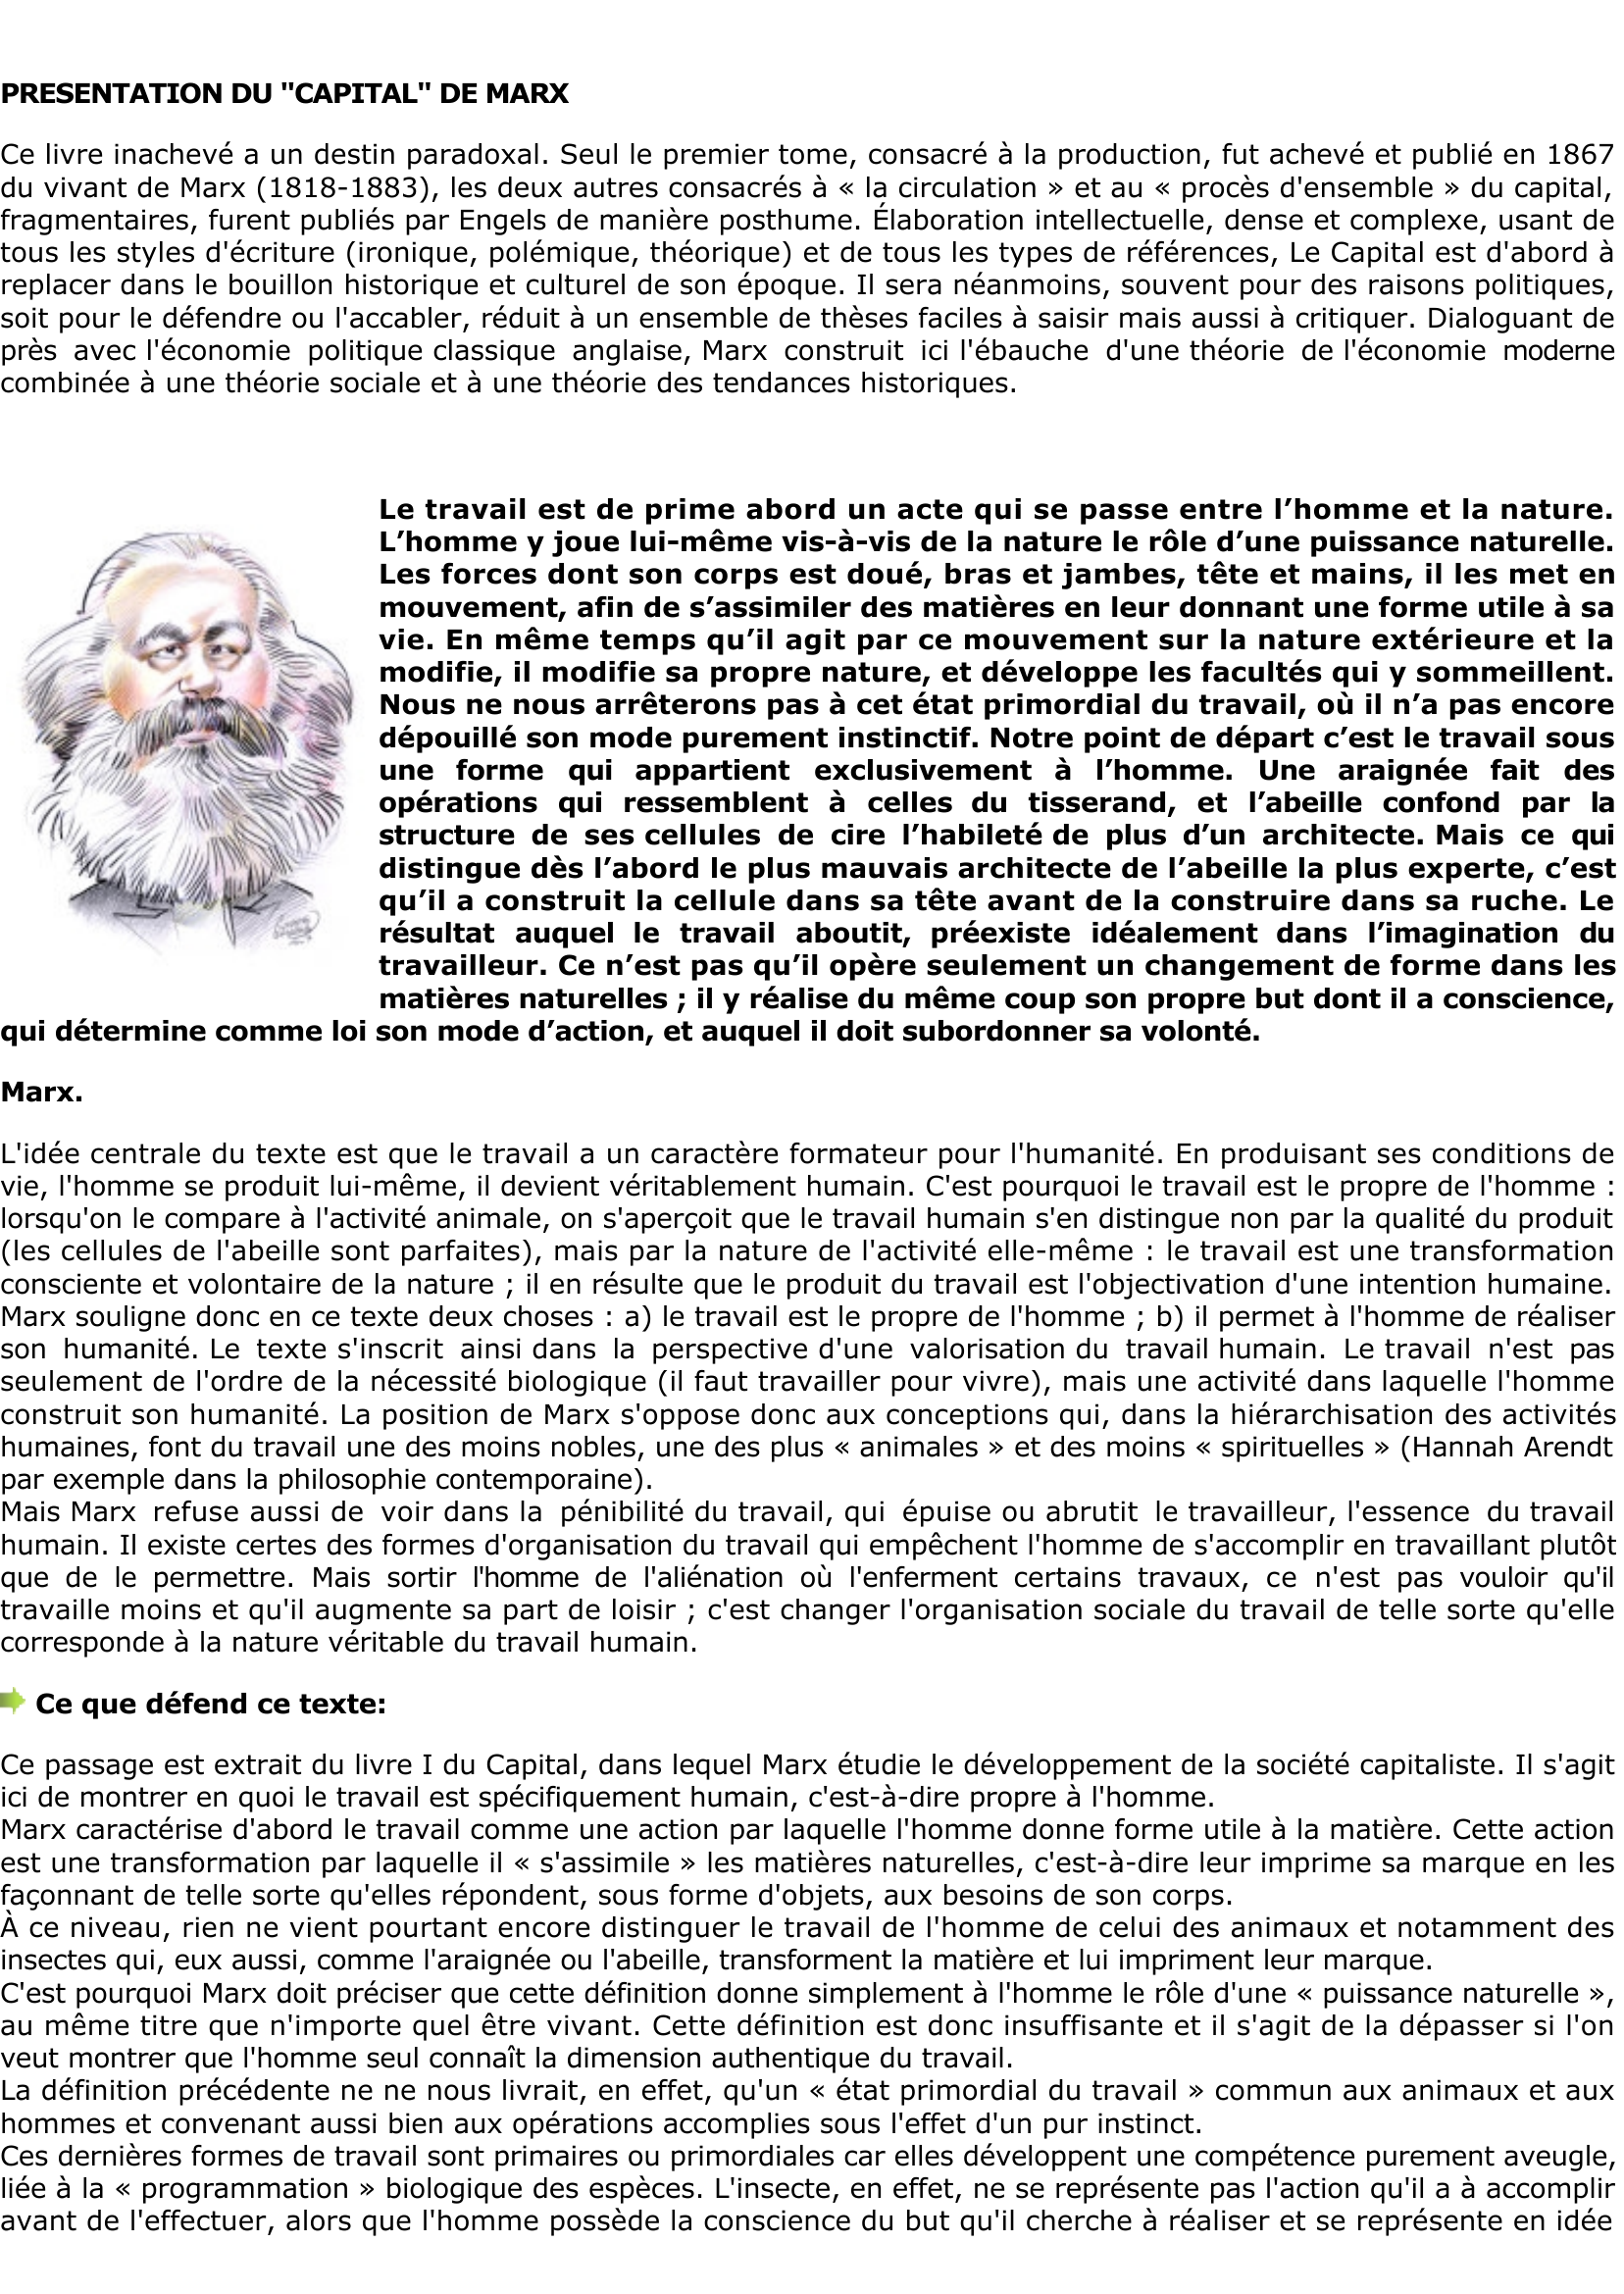 Prévisualisation du document Marx: L'homme est-il le seul à 

travailler ?